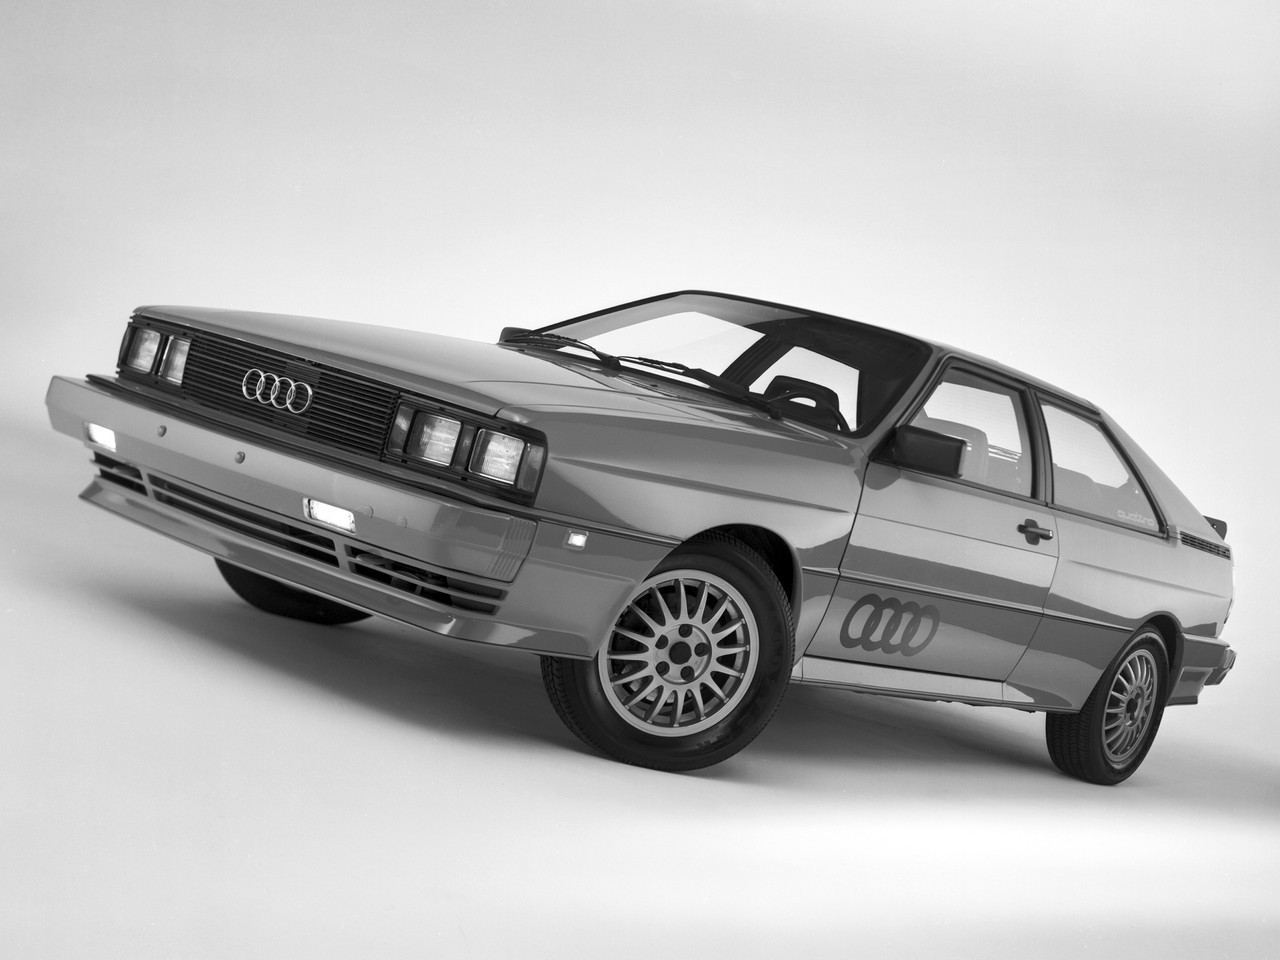 Audi Quattro 1980 года — одна из первых легковушек с полным приводом, который вошёл в моду в том числе благодаря раллийным успехам марки